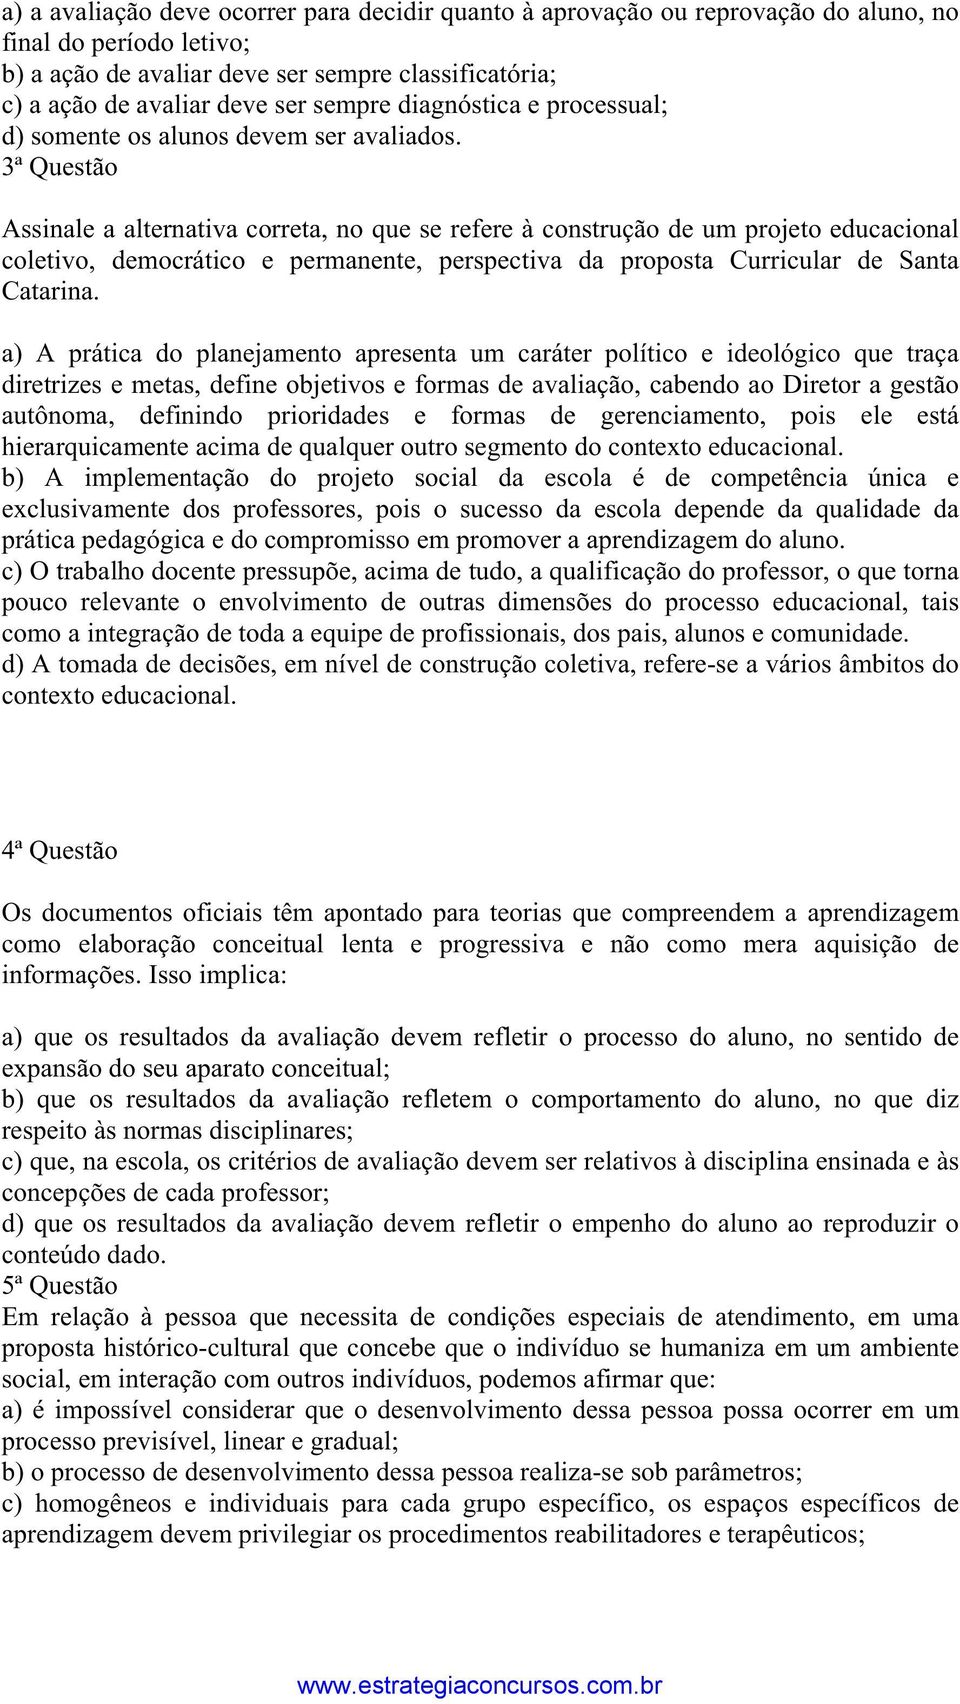 3ª Questão Assinale a alternativa correta, no que se refere à construção de um projeto educacional coletivo, democrático e permanente, perspectiva da proposta Curricular de Santa Catarina.